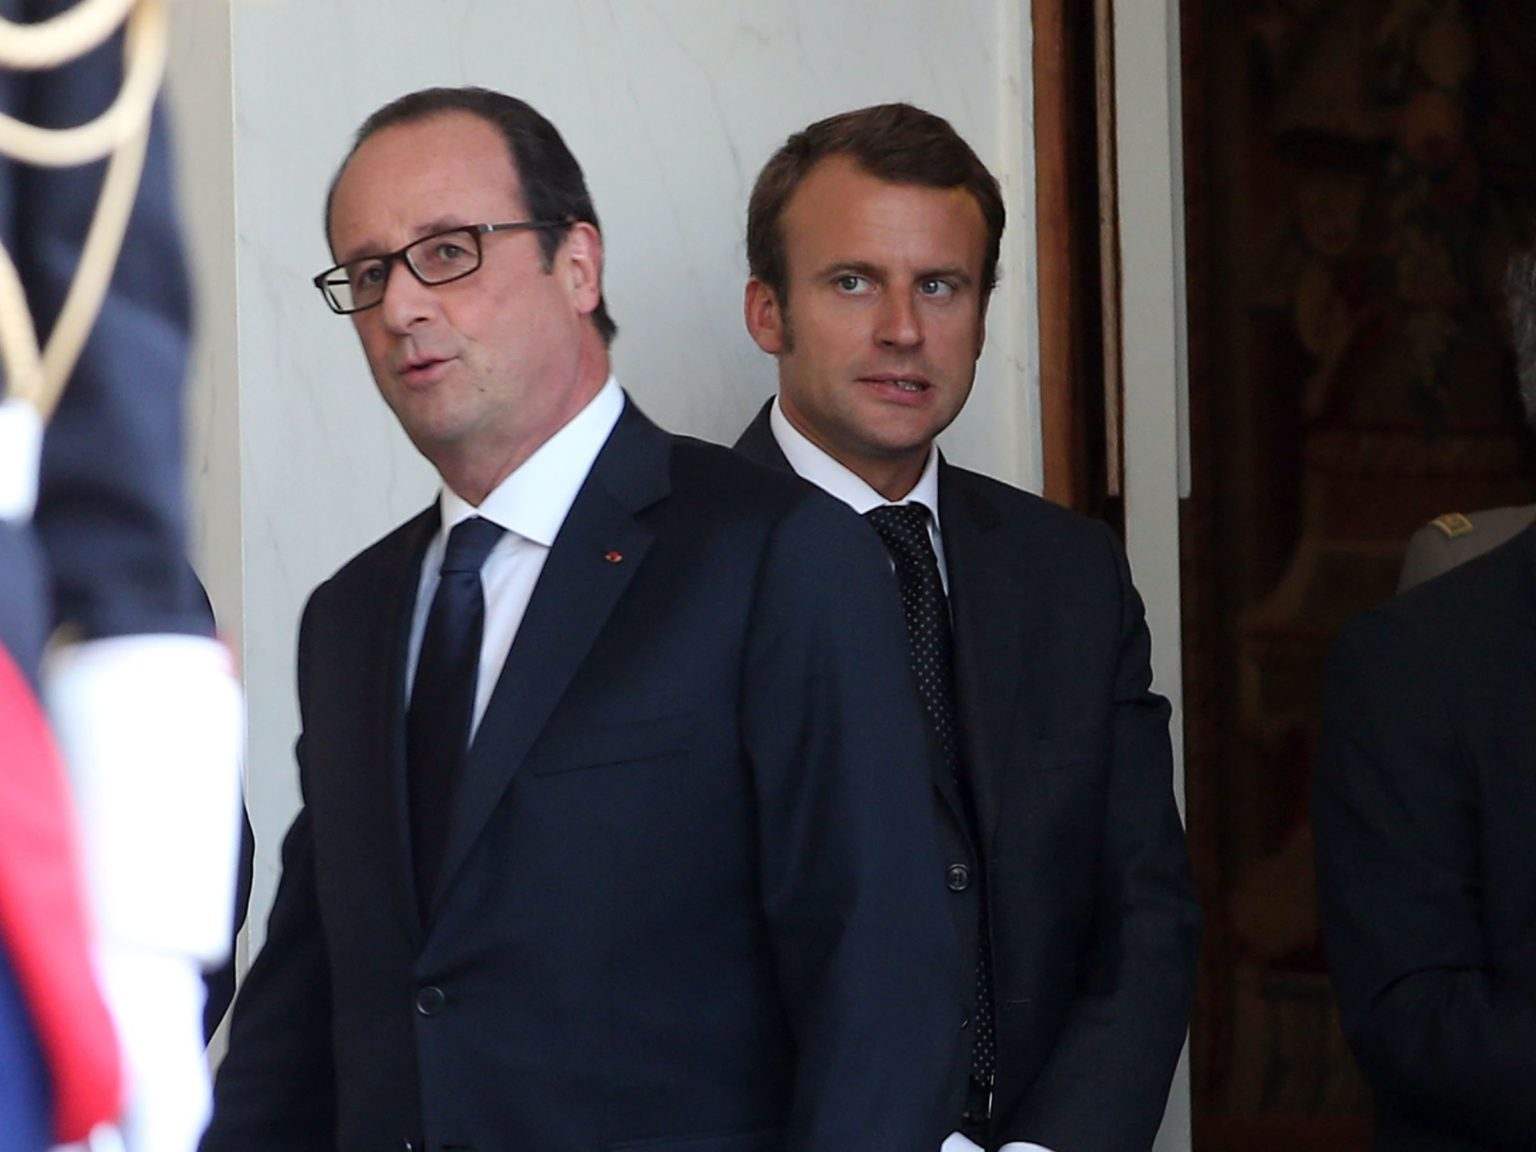 France : Hollande resurgit au pire moment pour Macron, sa vengeance est terrible